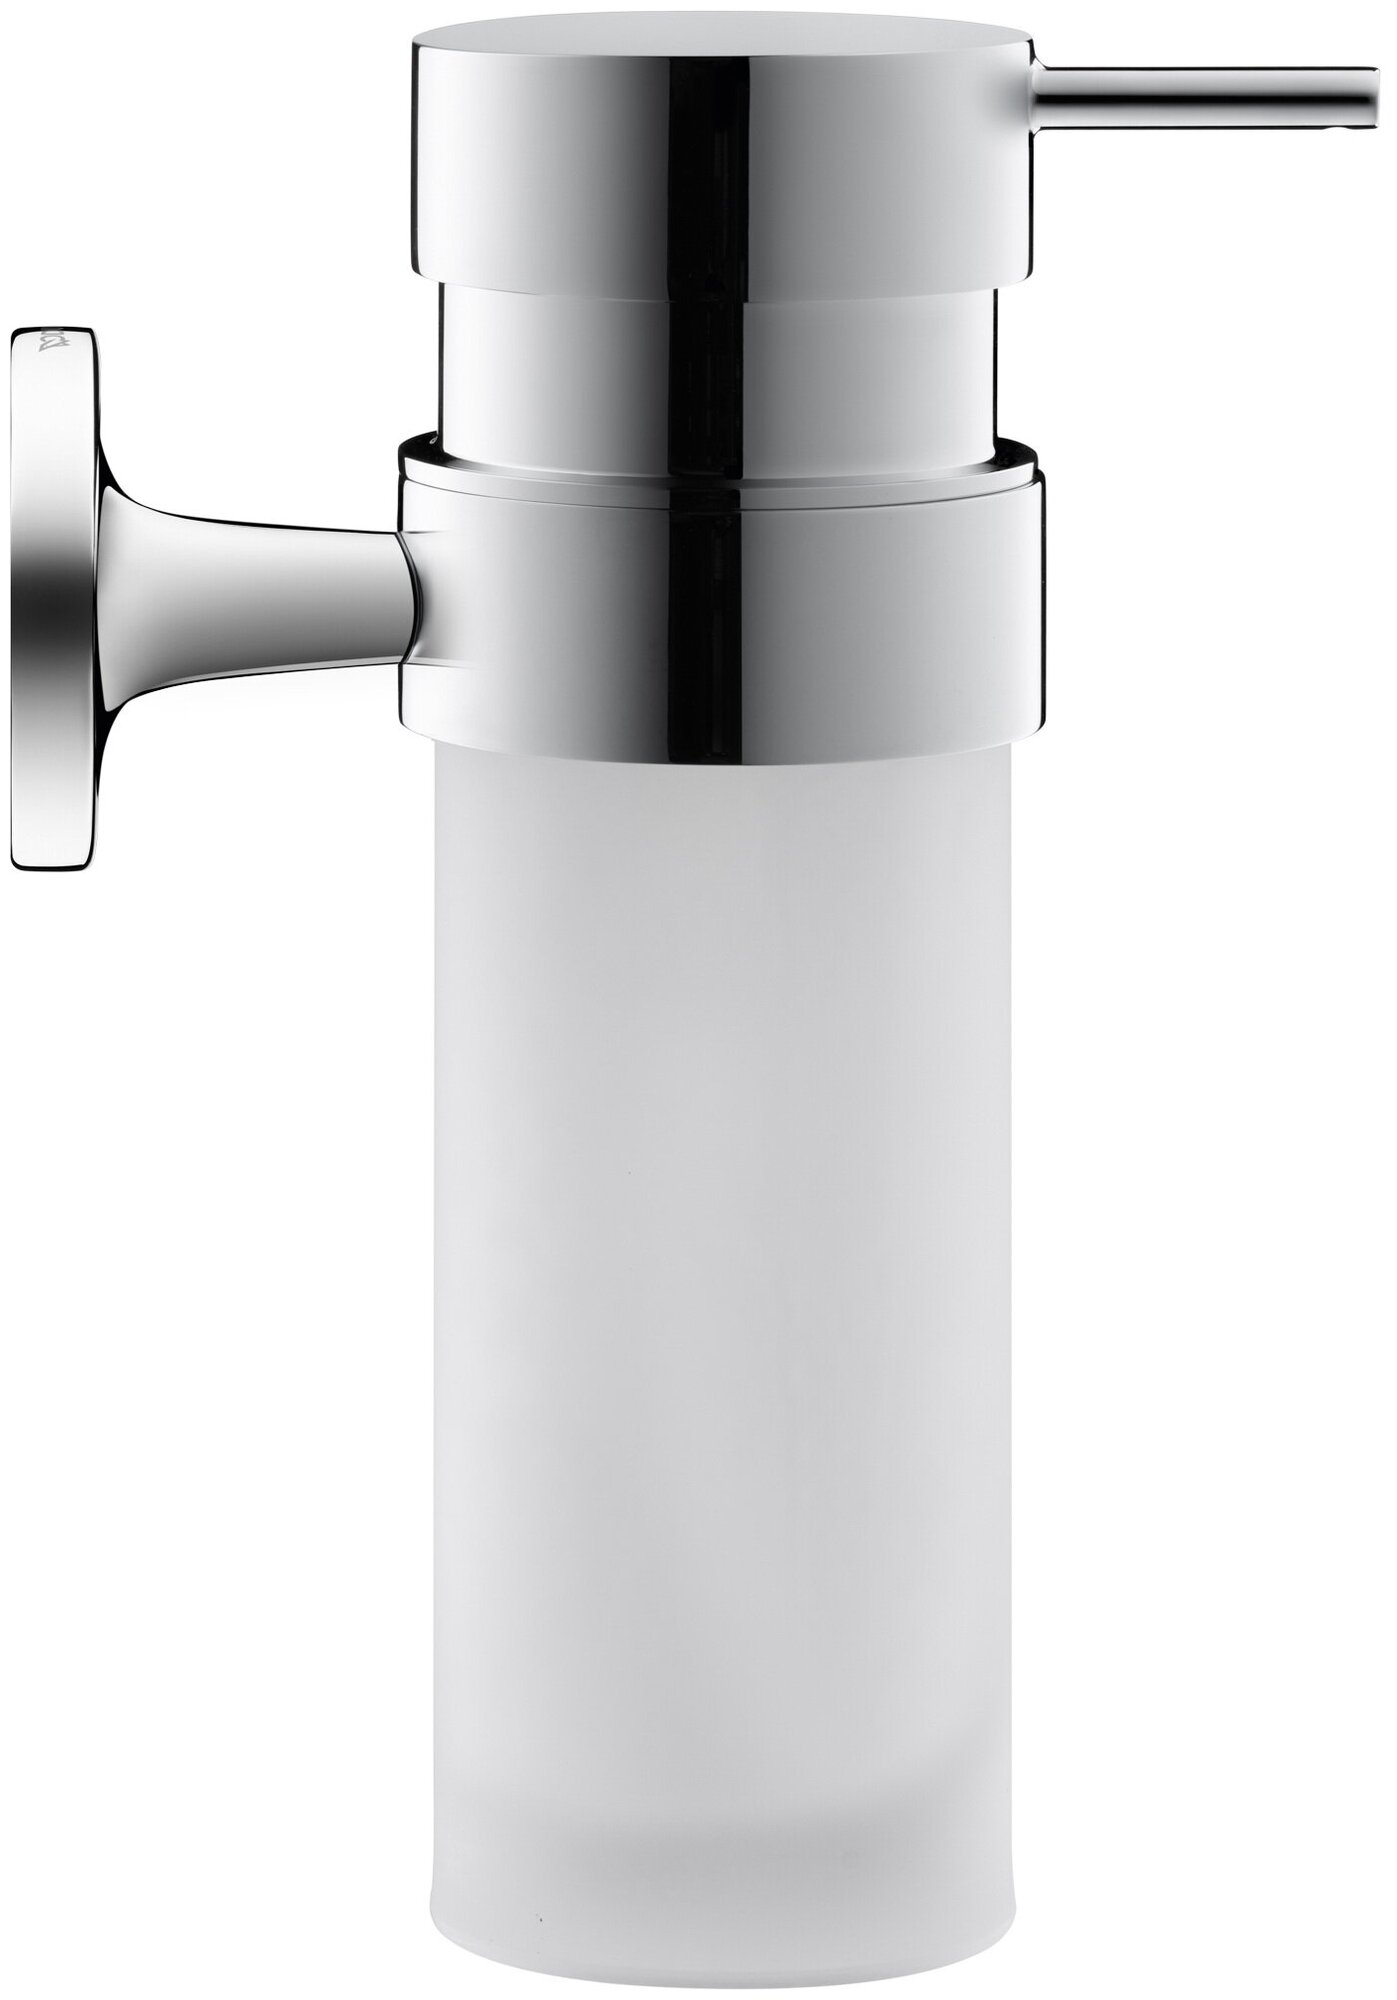 Дозатор для жидкого мыла DURAVIT Starck T подвесной, стекло матовое, цвет: хром 0099351000